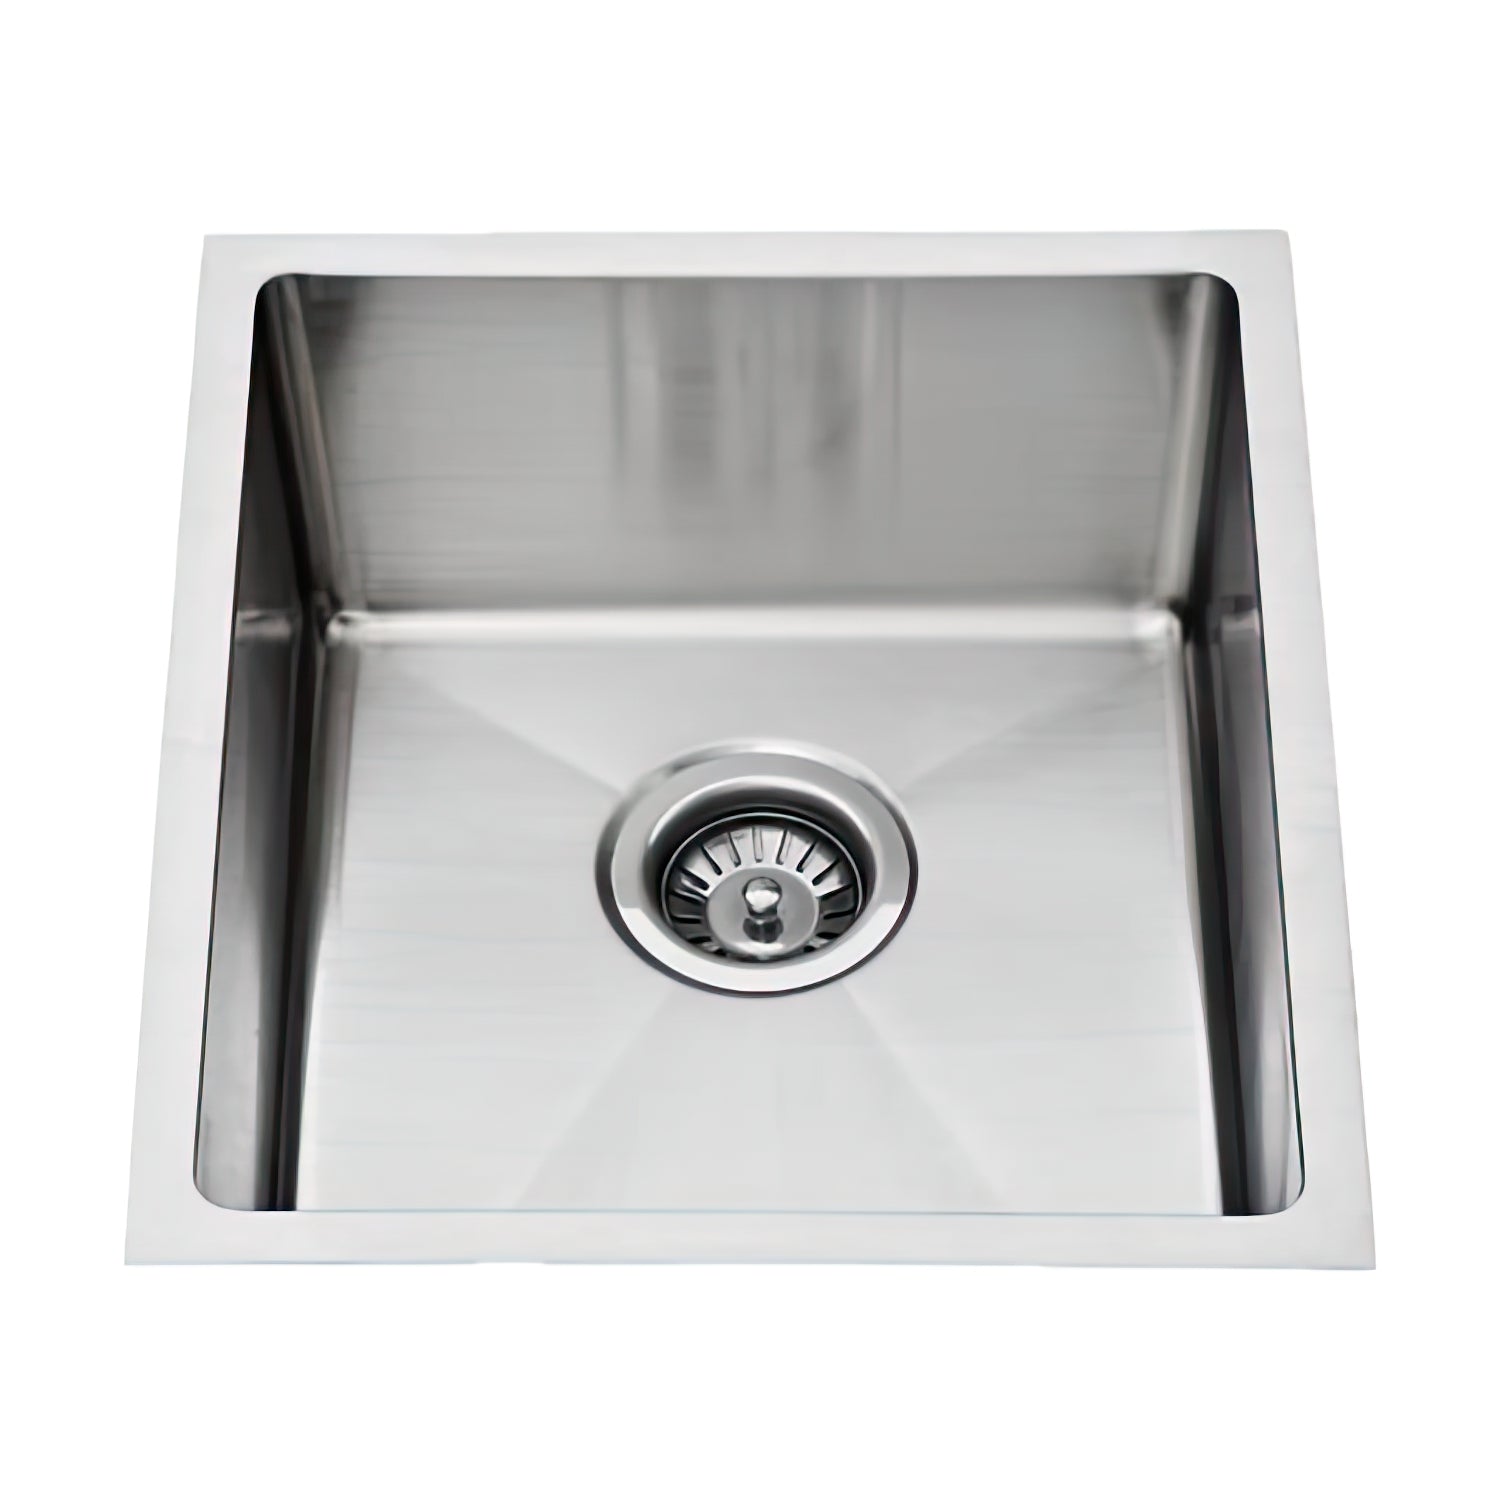 Piato 300 x 450 x 250mm Stainless Steel Undermount Sink